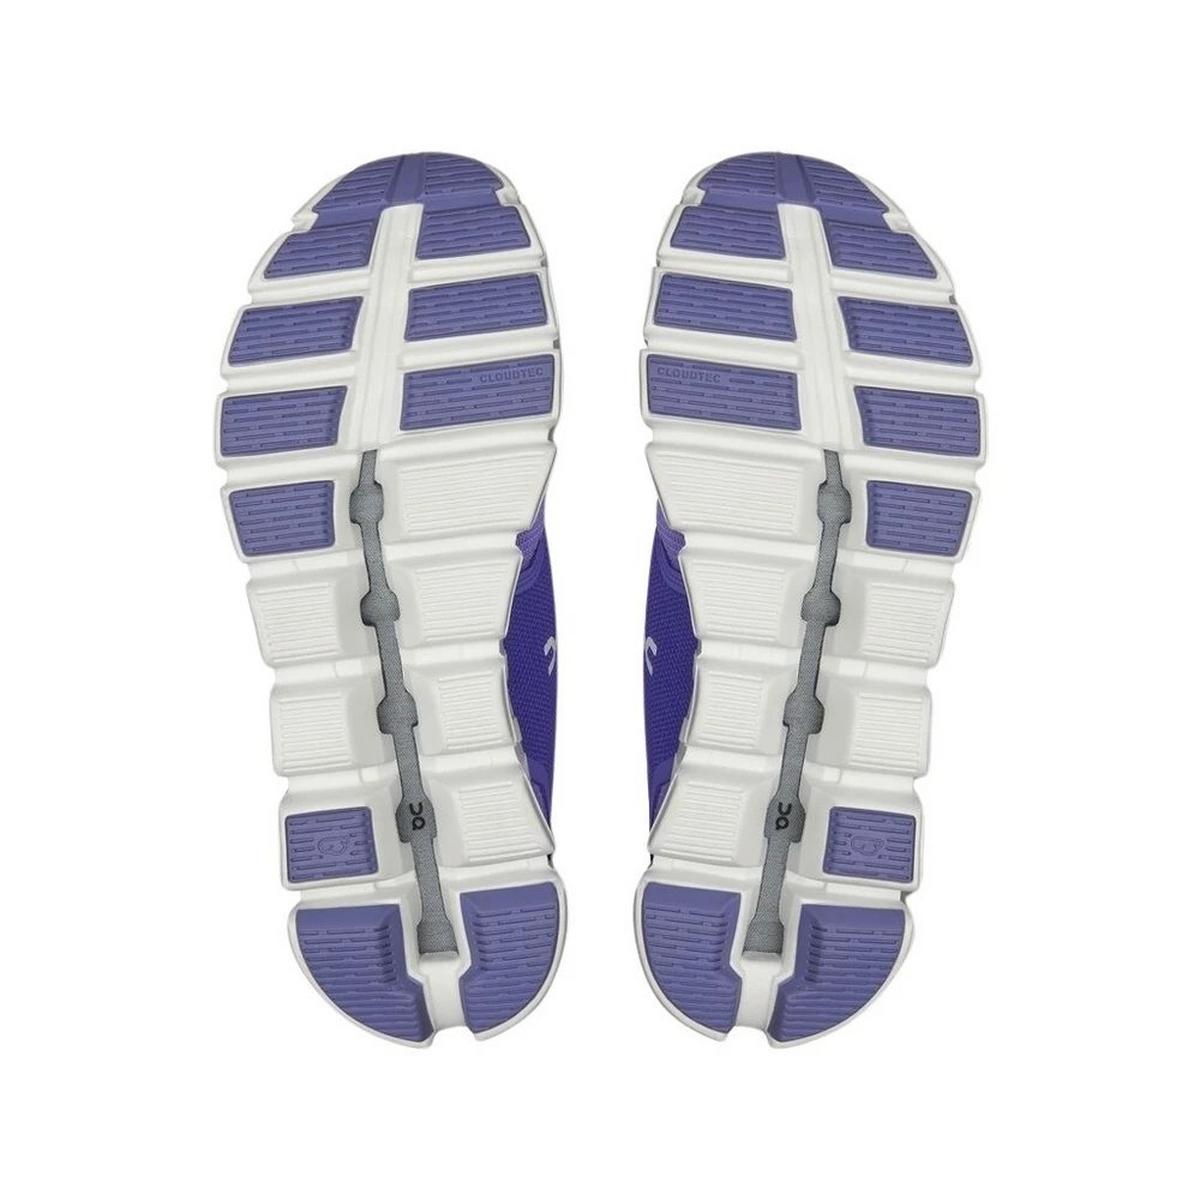 On Women's Cloud 5 Walking Shoes - Purple